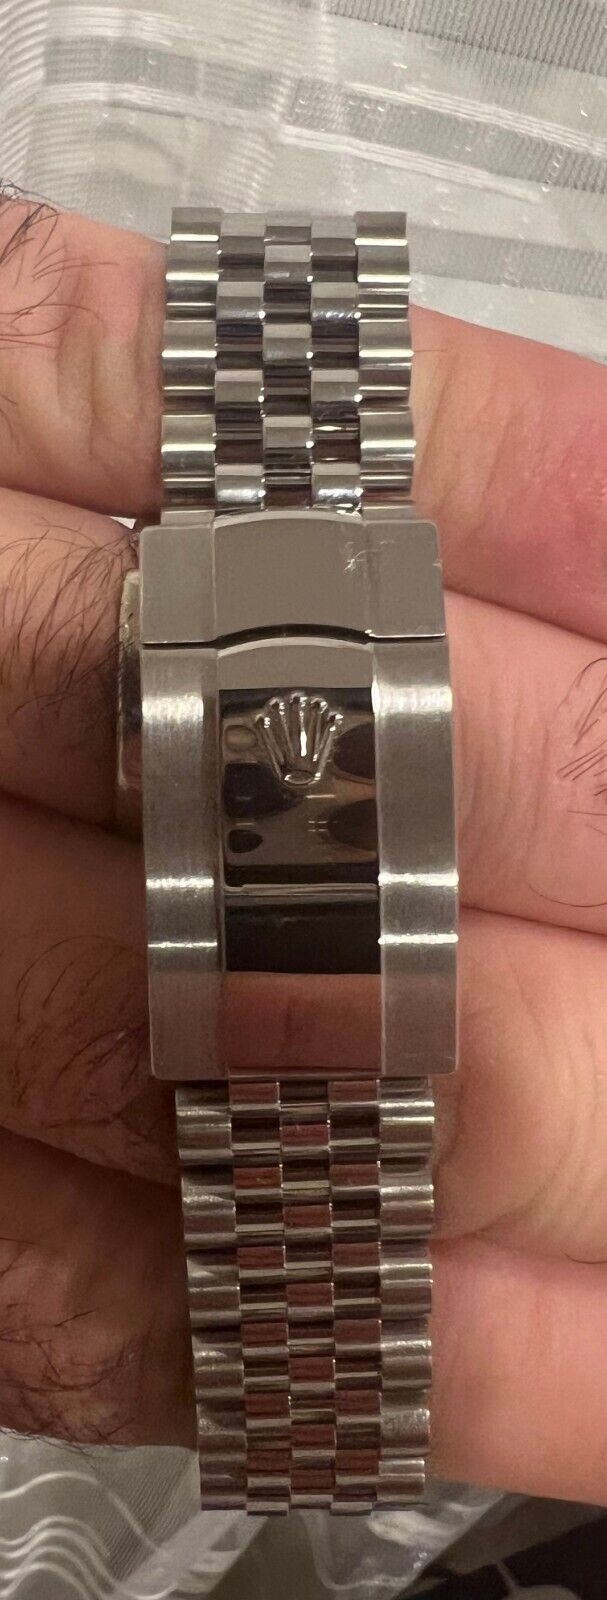 Rolex Datejust 126334 Silver Jubilee Bracelet Black Dial